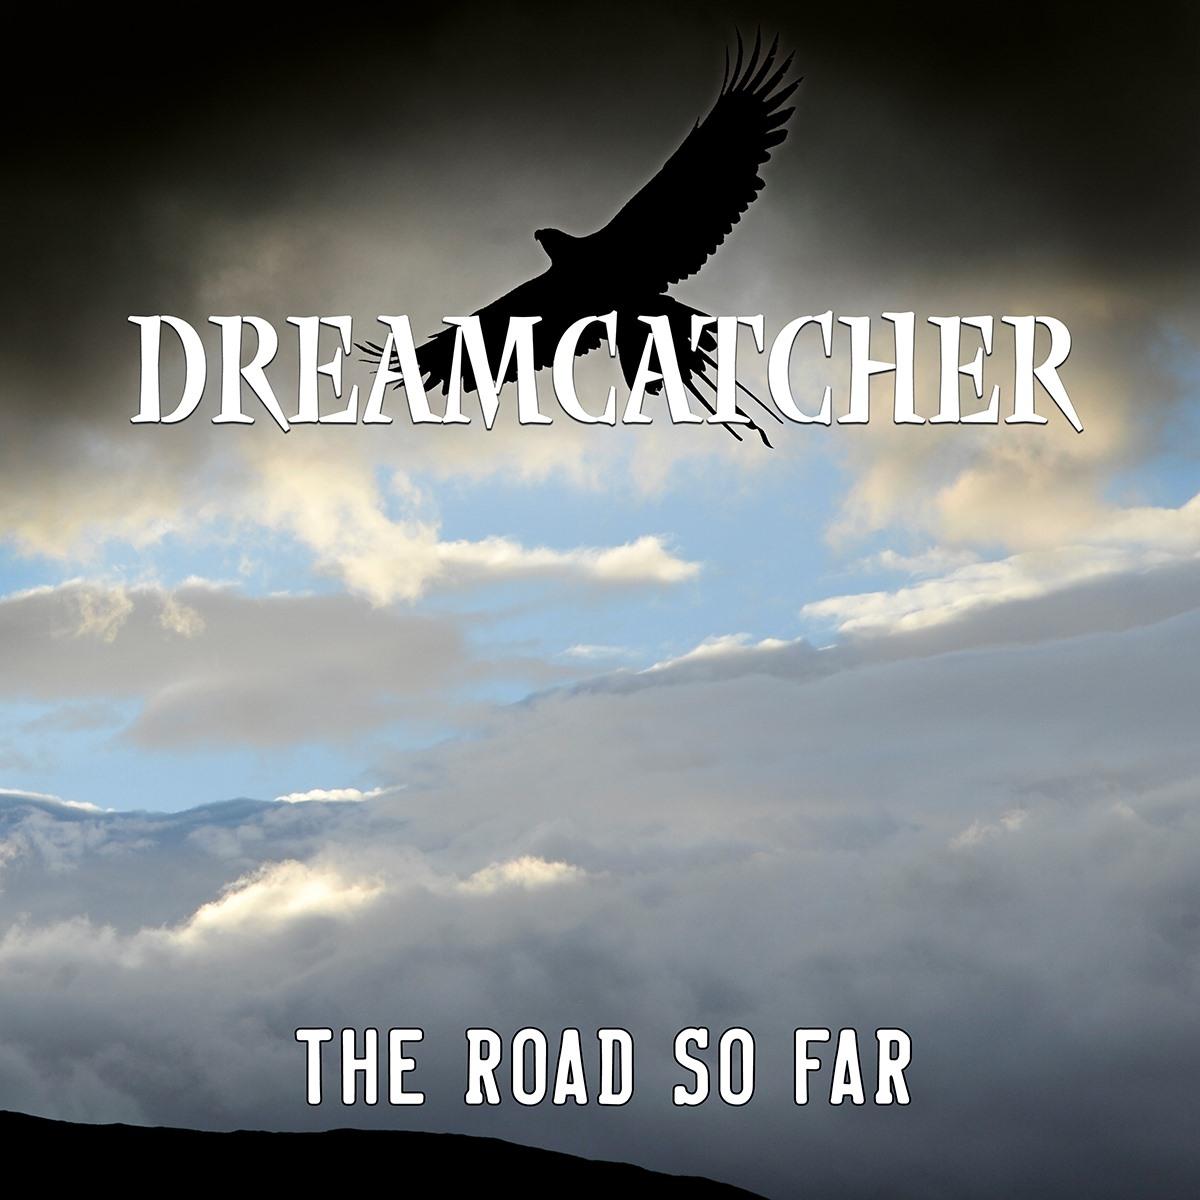 Dreamcatcher the road so far